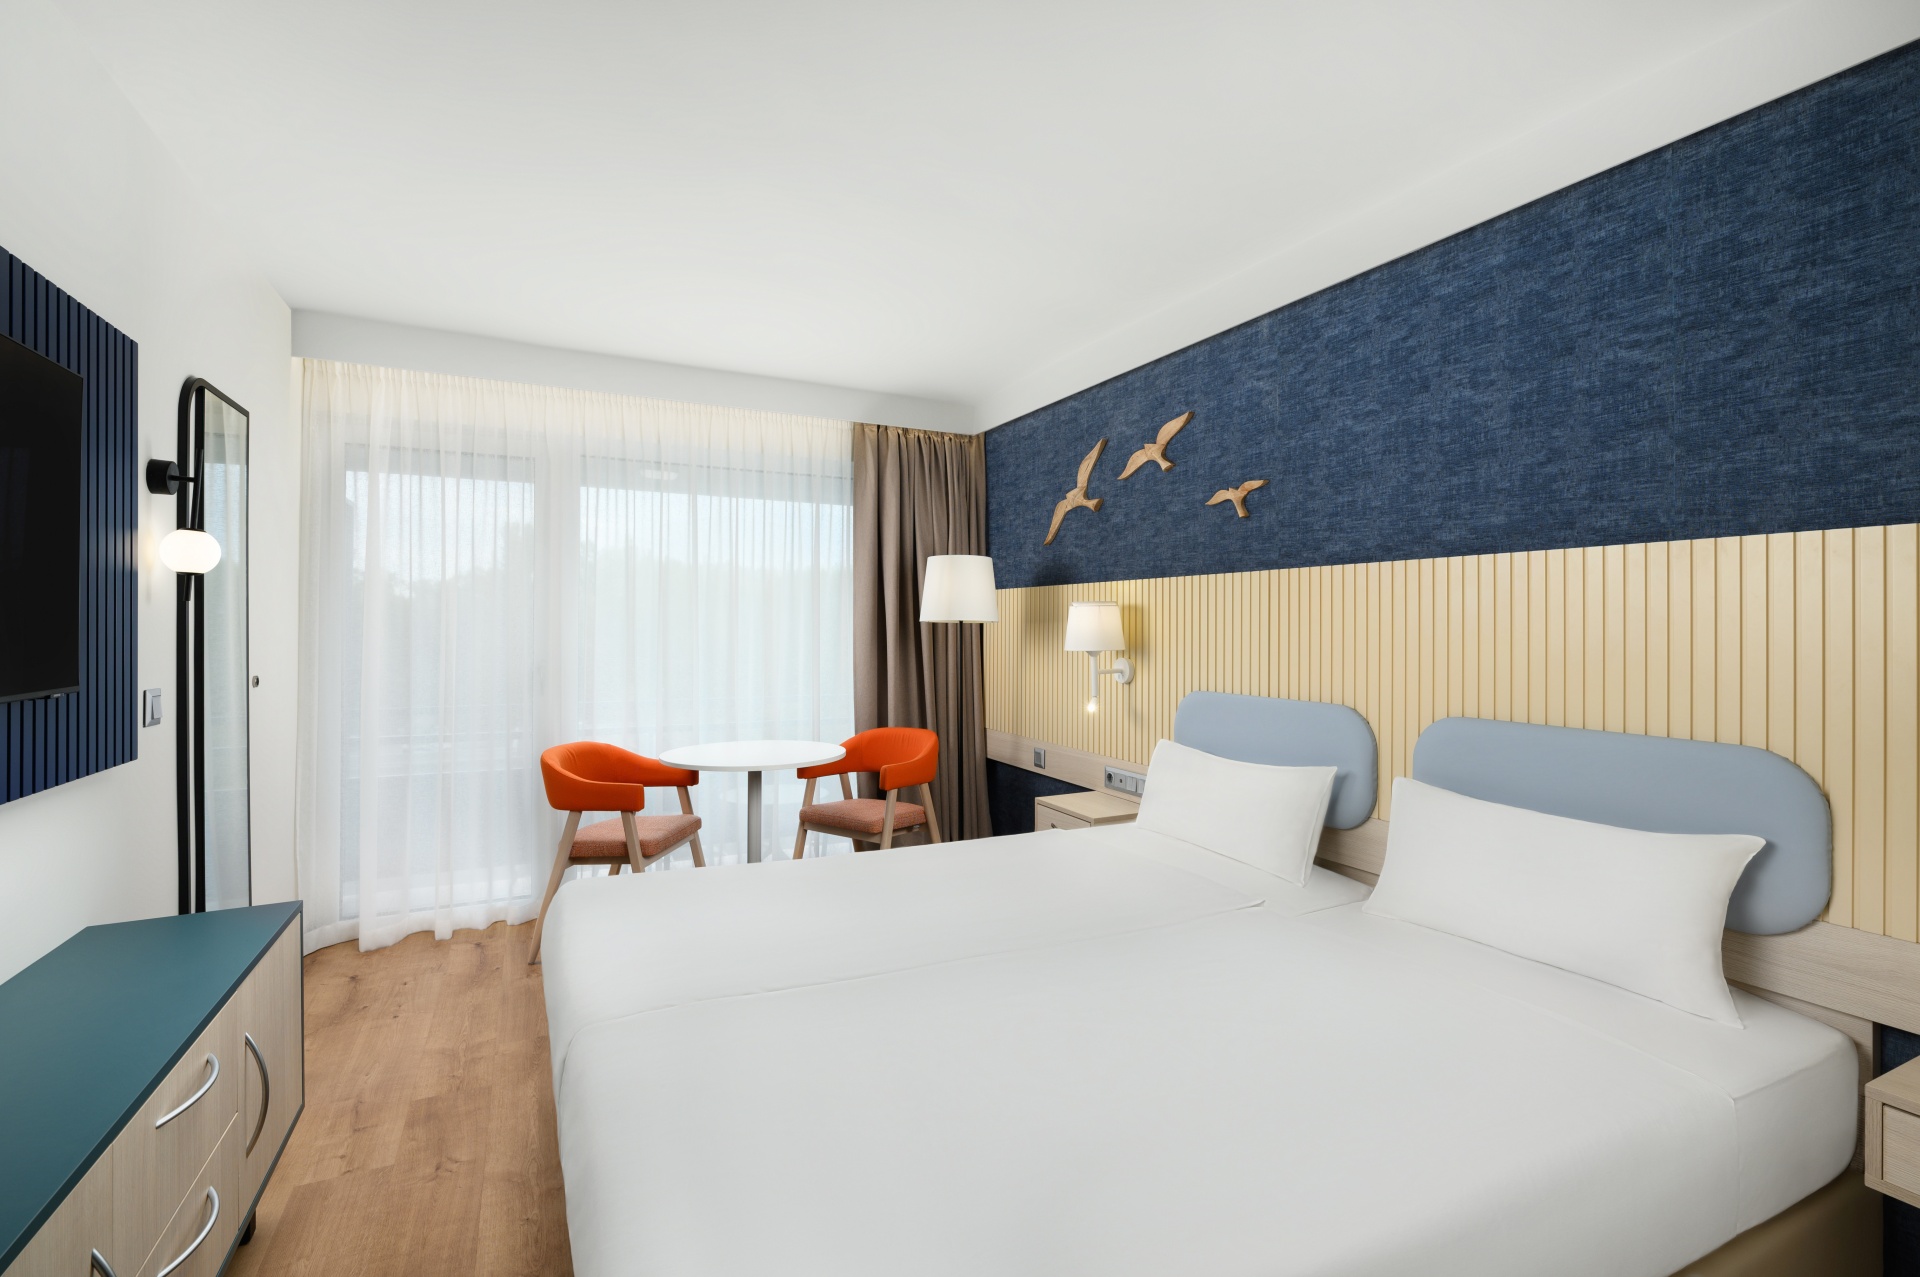 Hamisítatlan balatoni hangulat a teljesen újjászületett Prémium szobákban a balatonfüredi Danubius Hotel Annabellában